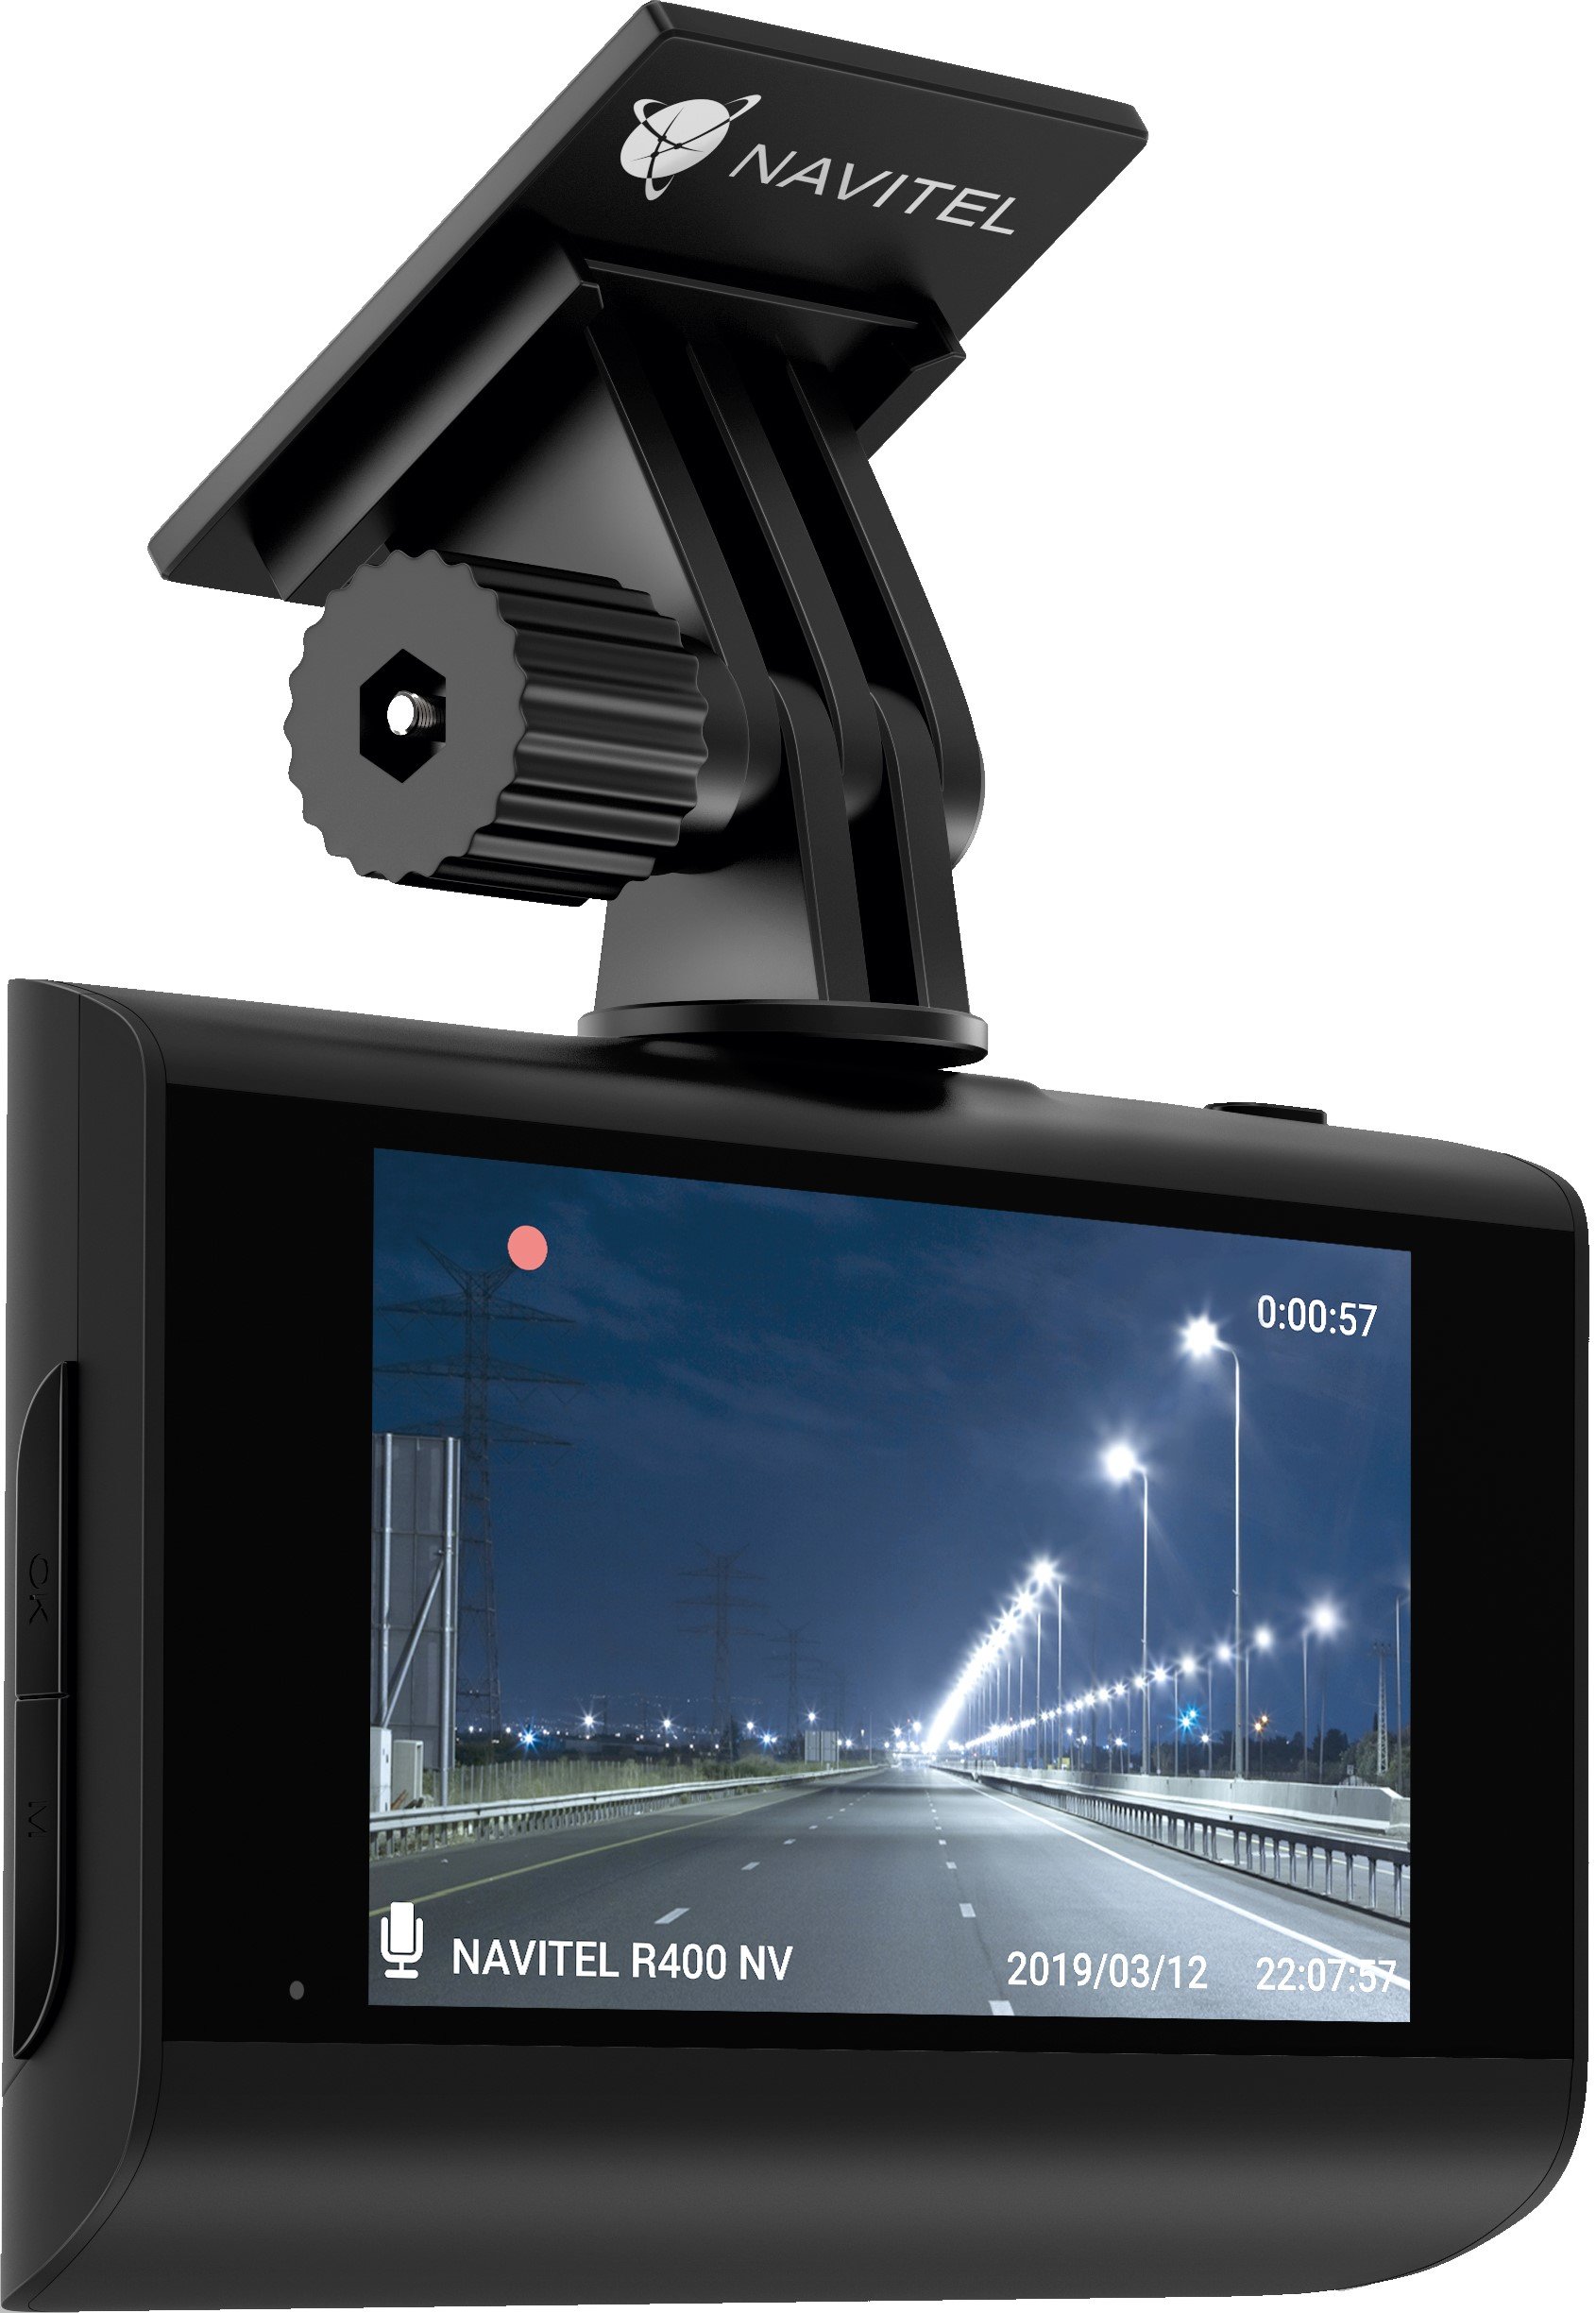 NAVITEL R400 NV Wideorejestrator - niskie ceny i opinie w Media Expert